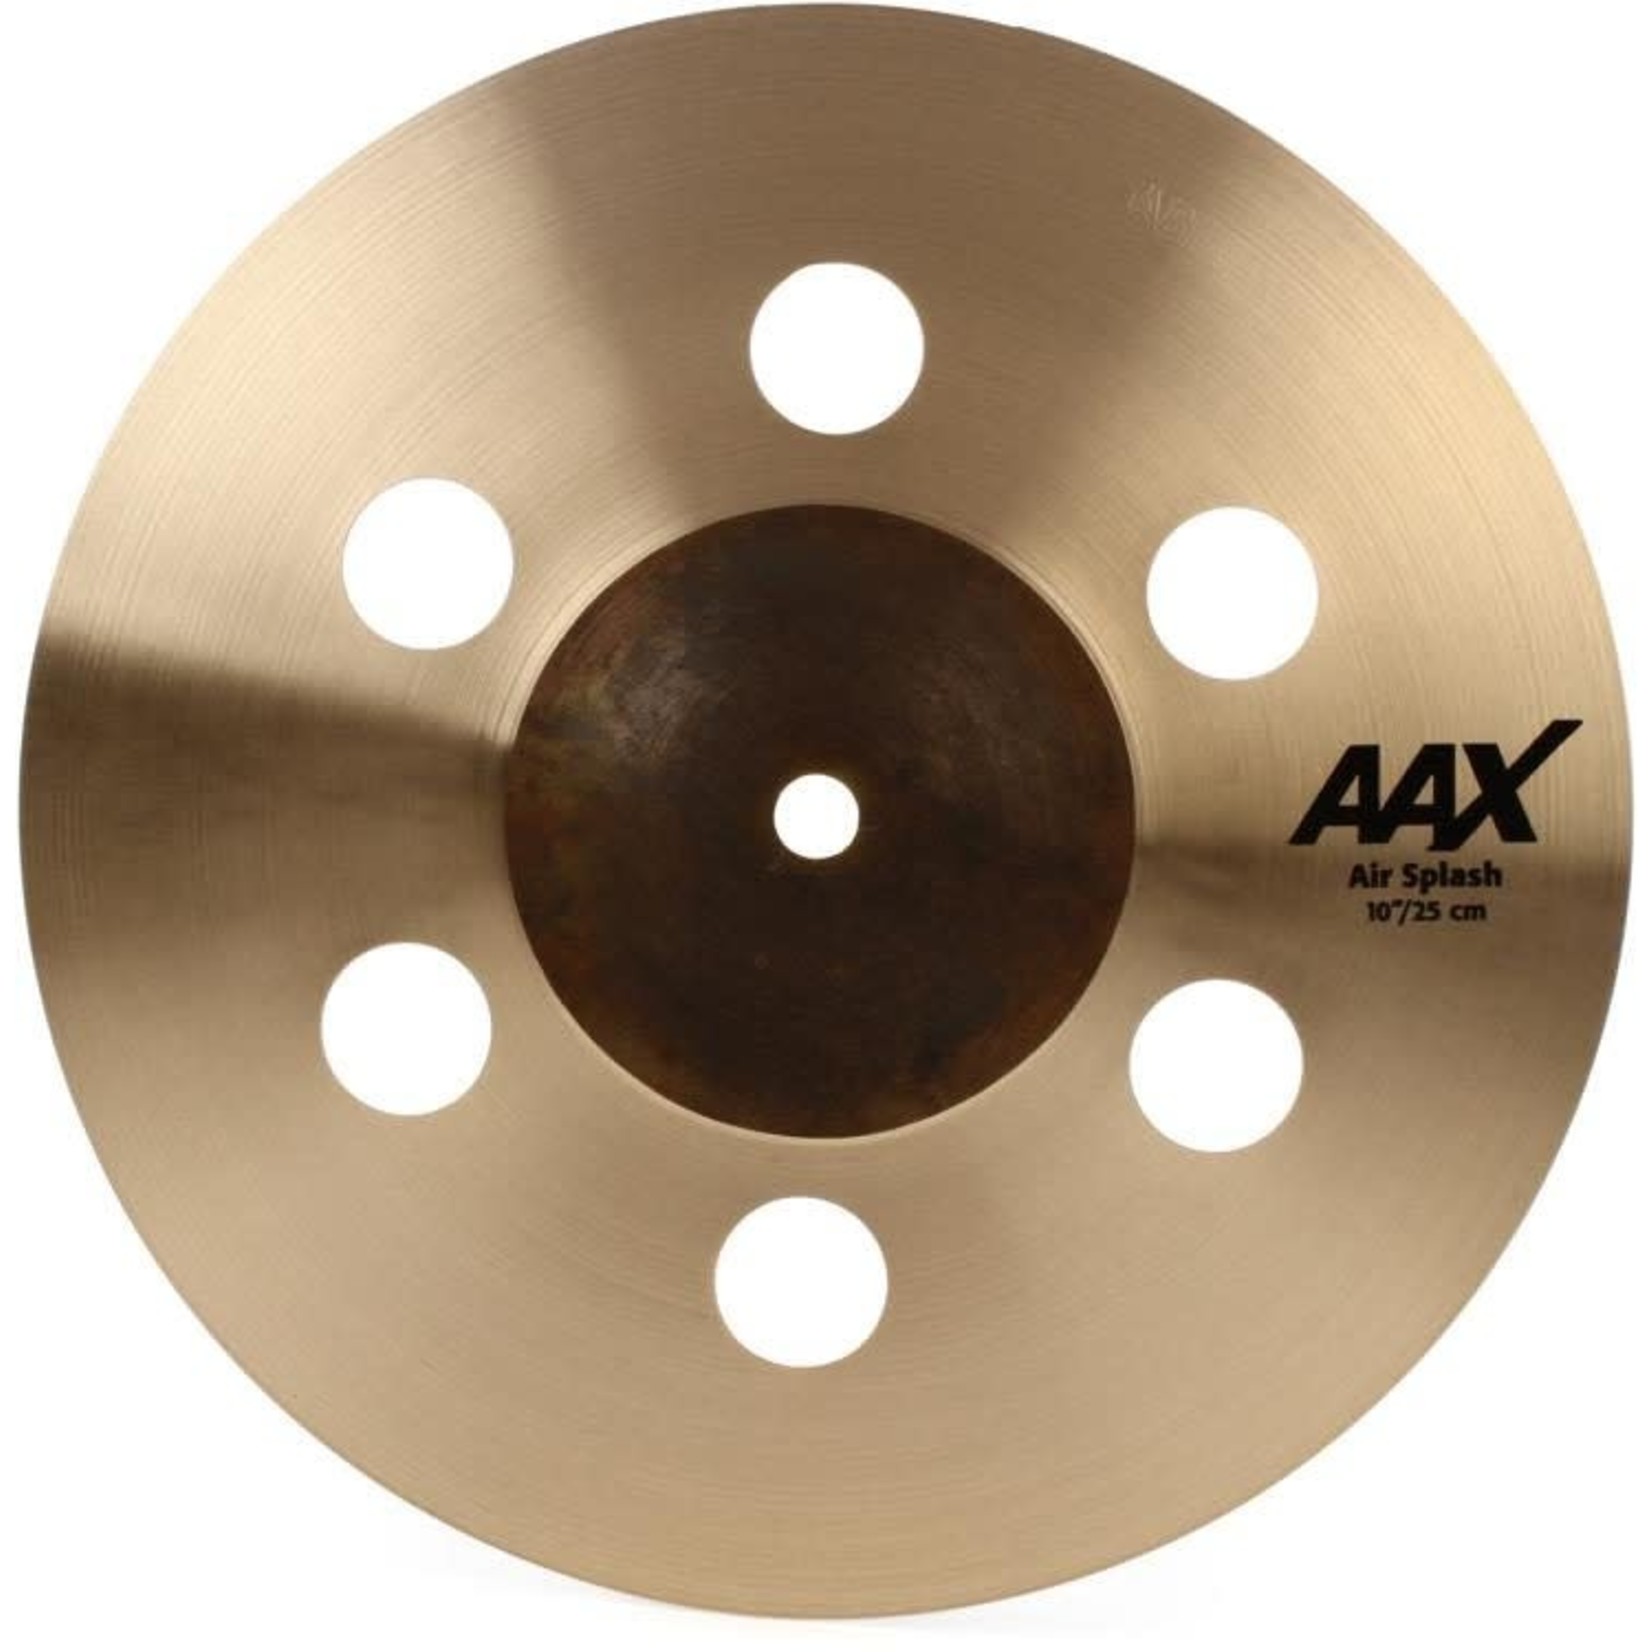 Sabian Sabian AAX 10" Air Splash Cymbal